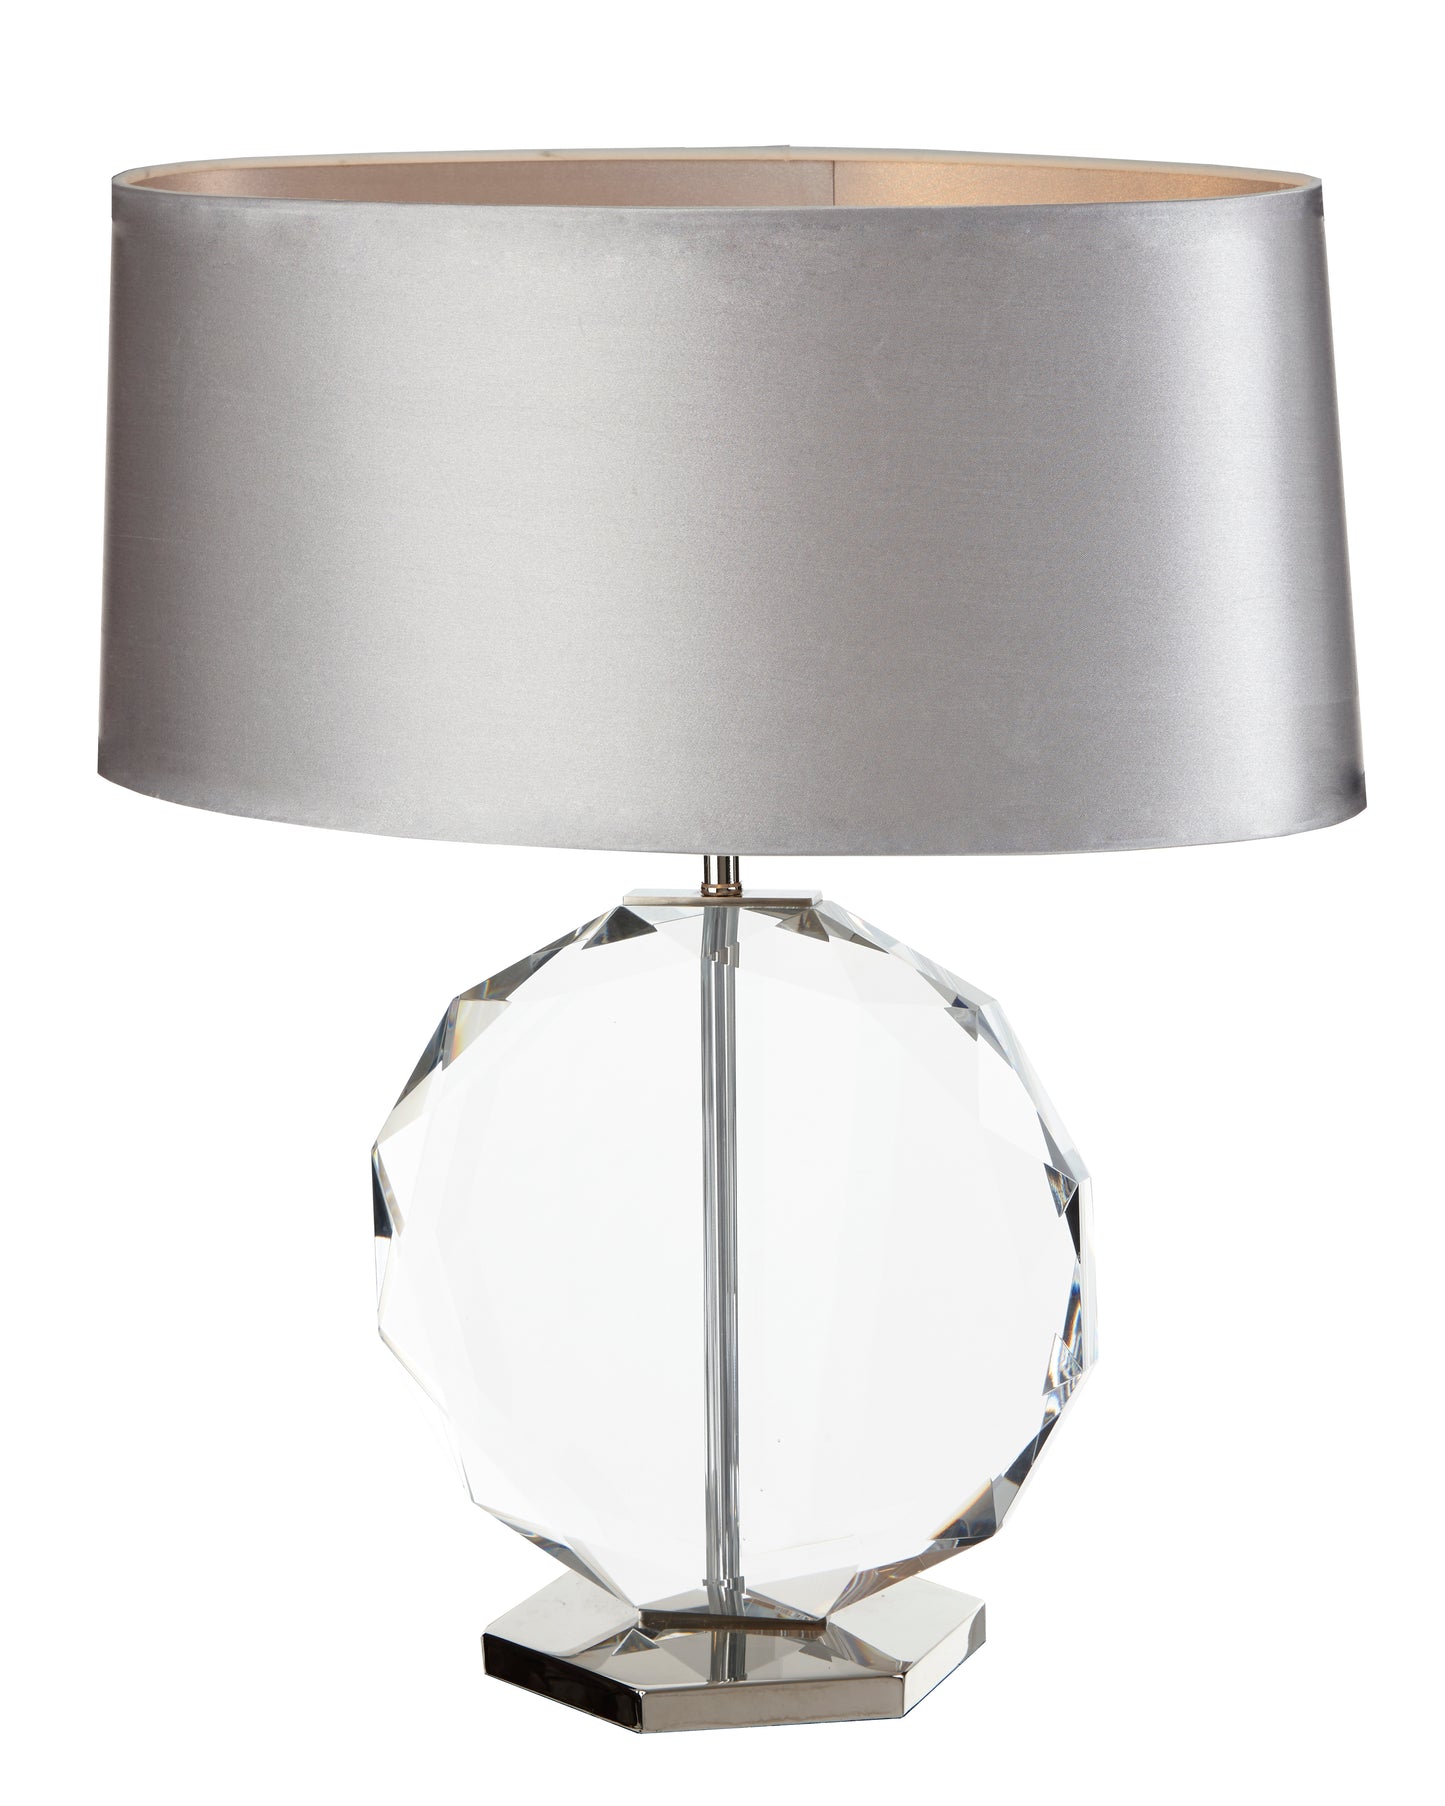 RV Astley Libby Table Lamp